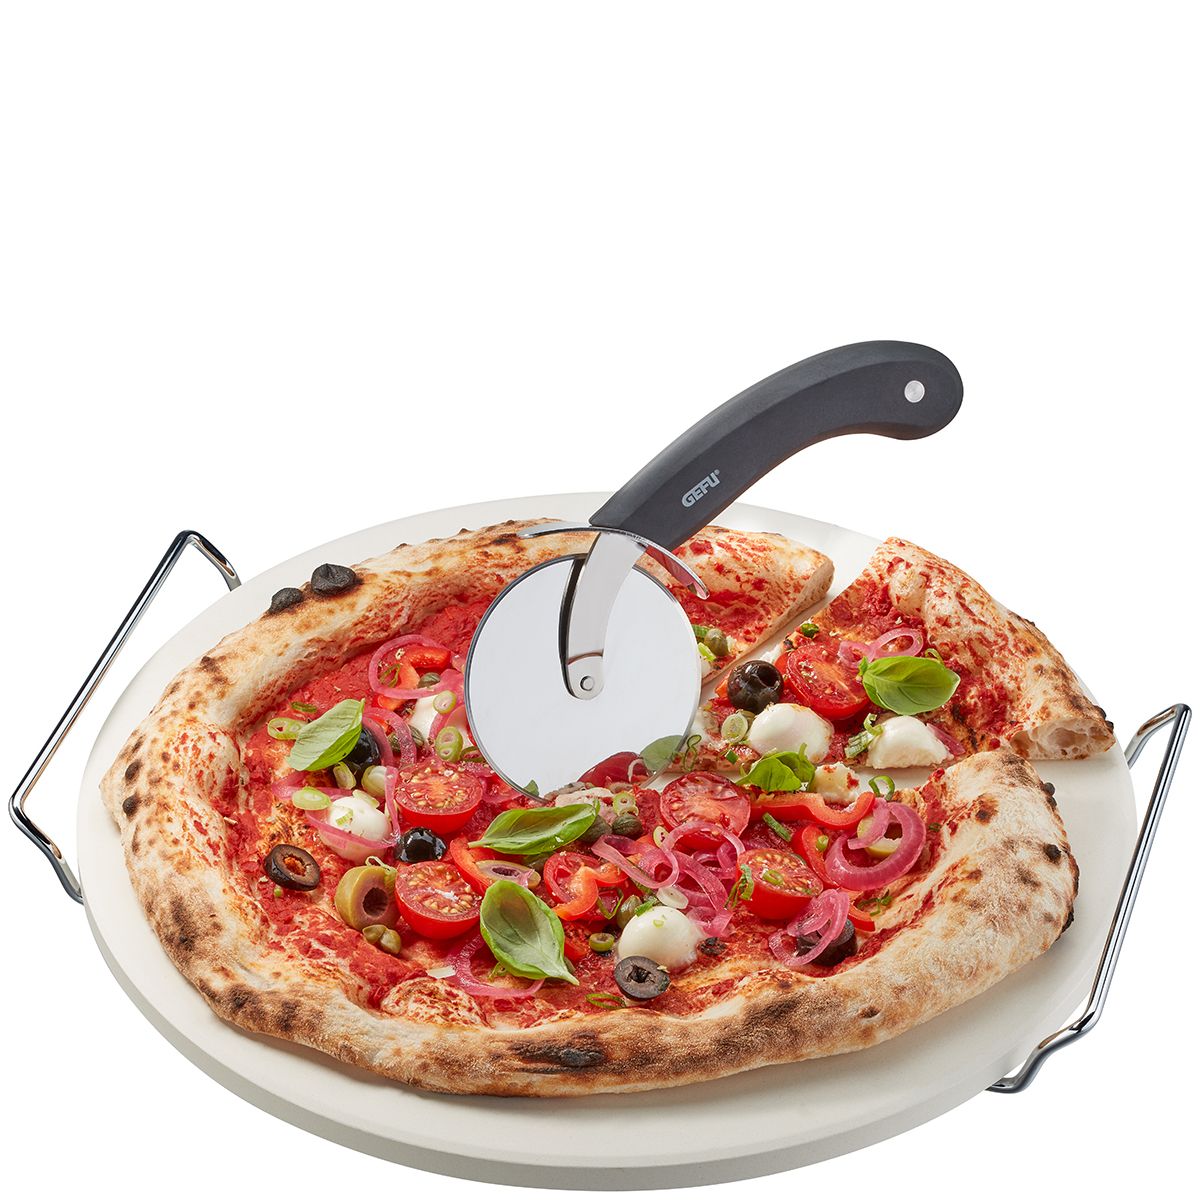 Pizzastein mit Gestell + Pizzaschneider DARIOSO rund von Gefu